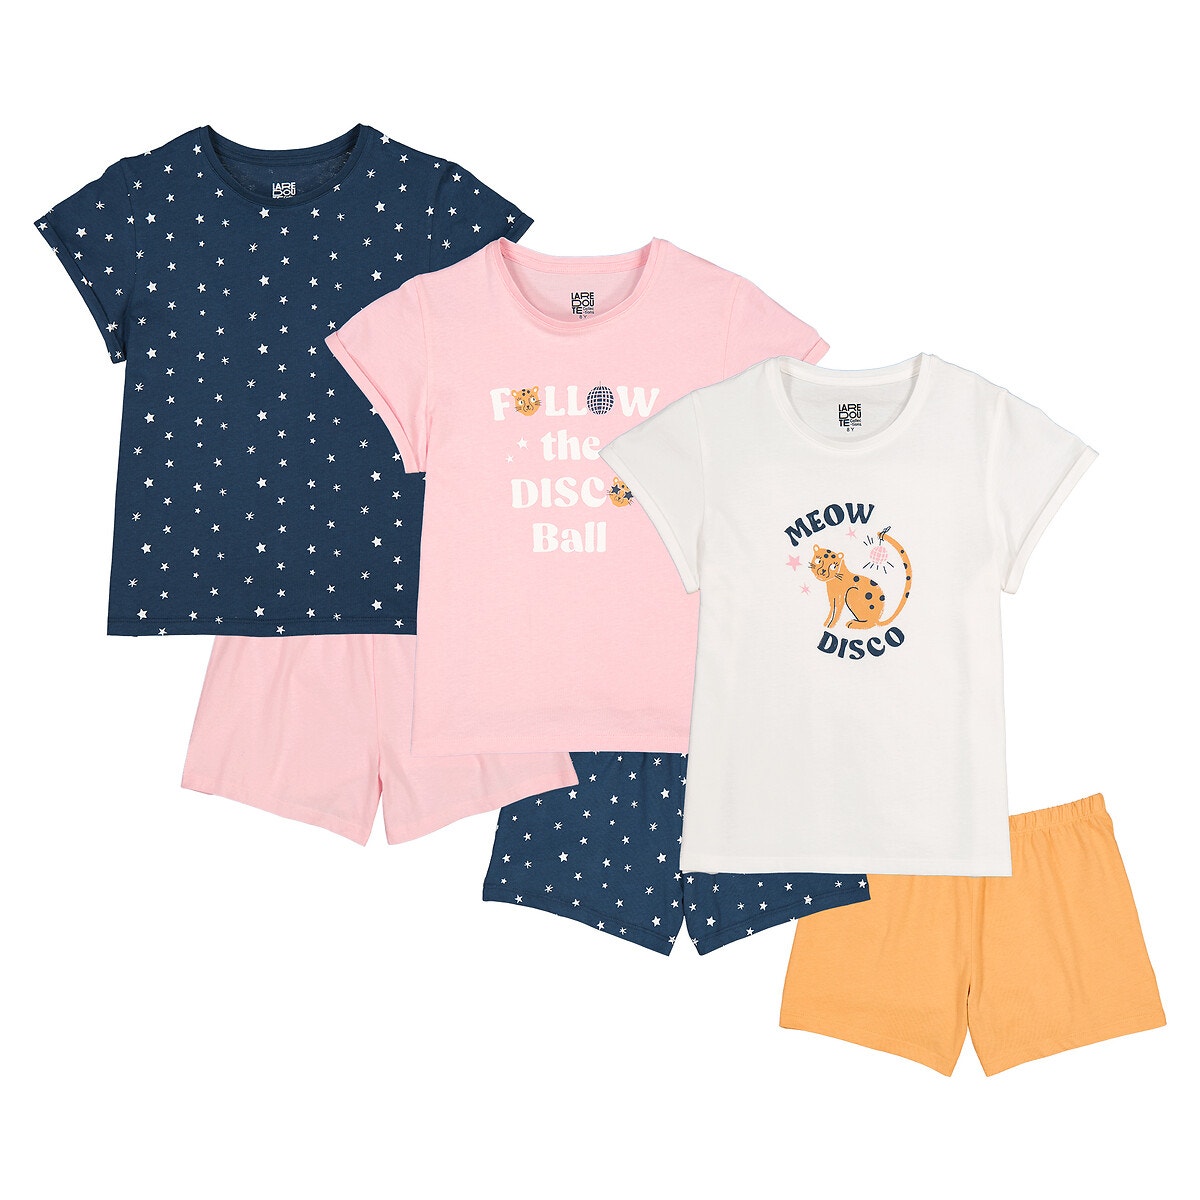 Μόδα > Παιδικά > Κορίτσι > Πιτζάμες, νυχτικά Σετ 3 πιτζάμες με σορτς